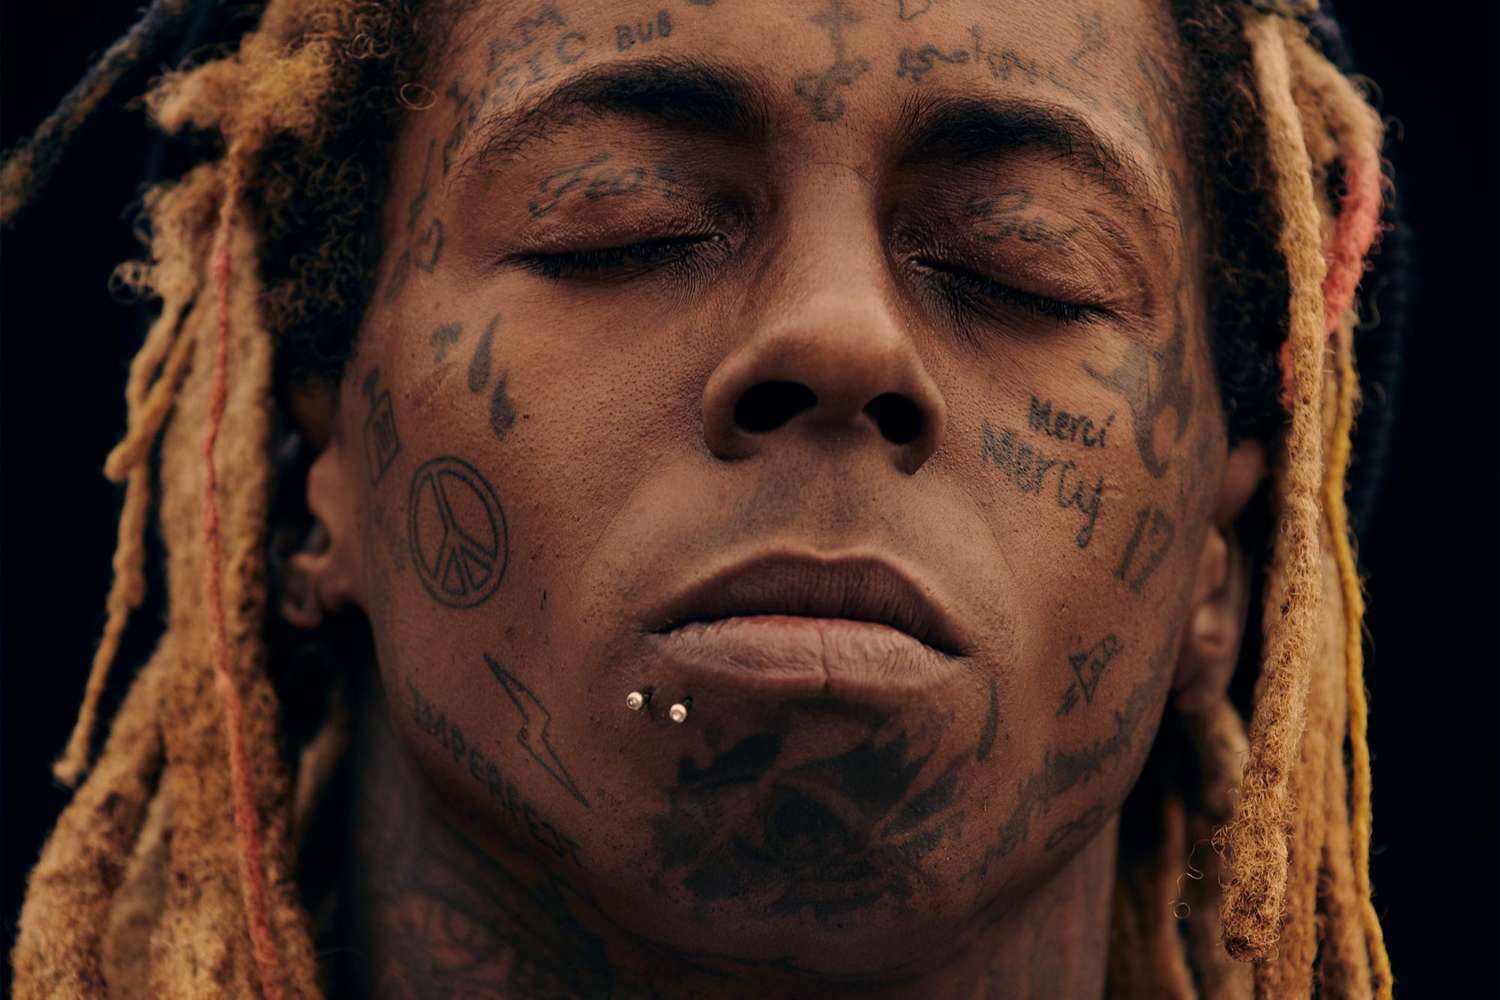 Lil Wayne promo art